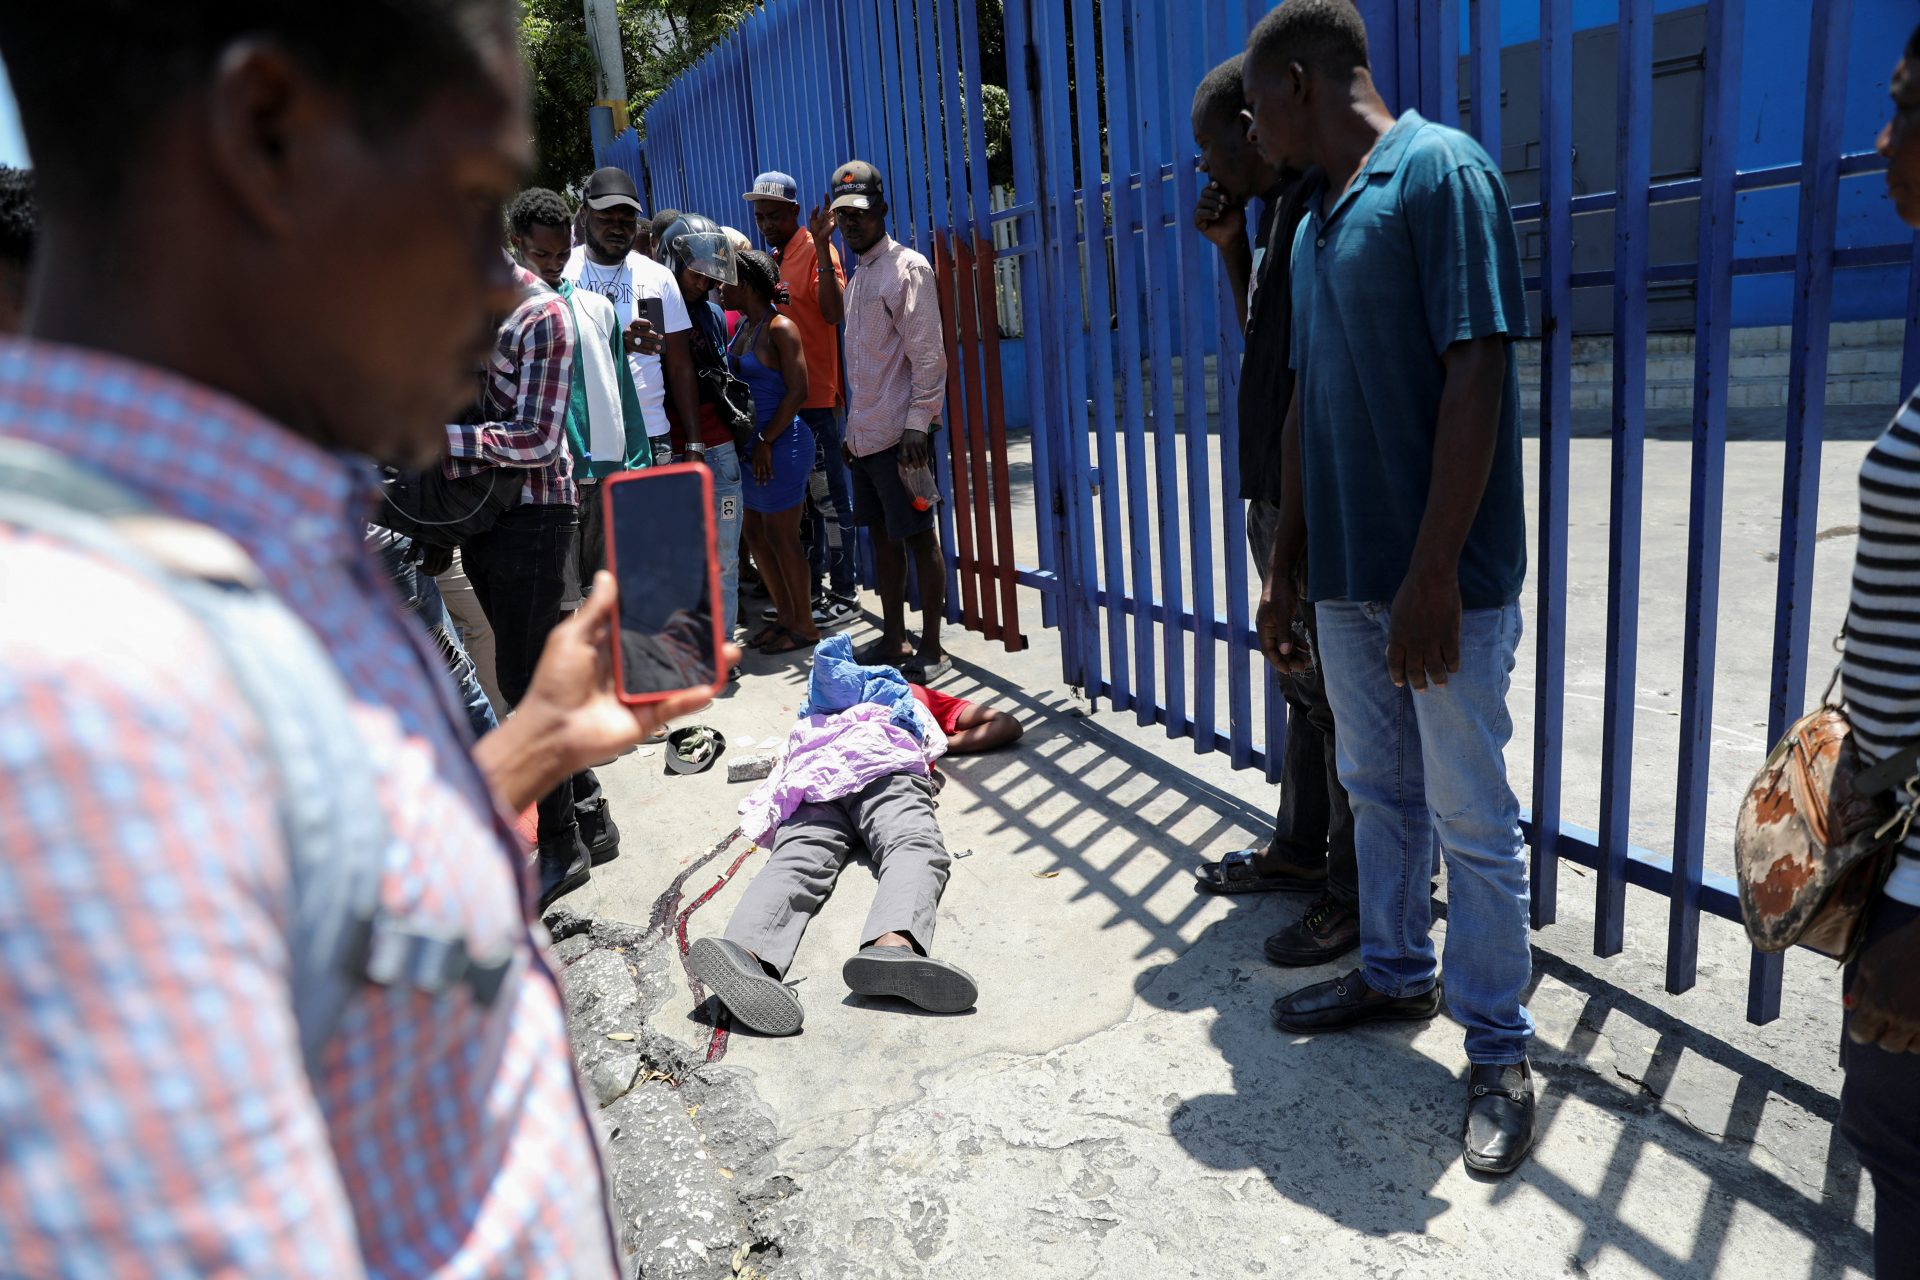 Nouveau PM d'Haïti chargé de stabiliser le pays en crise